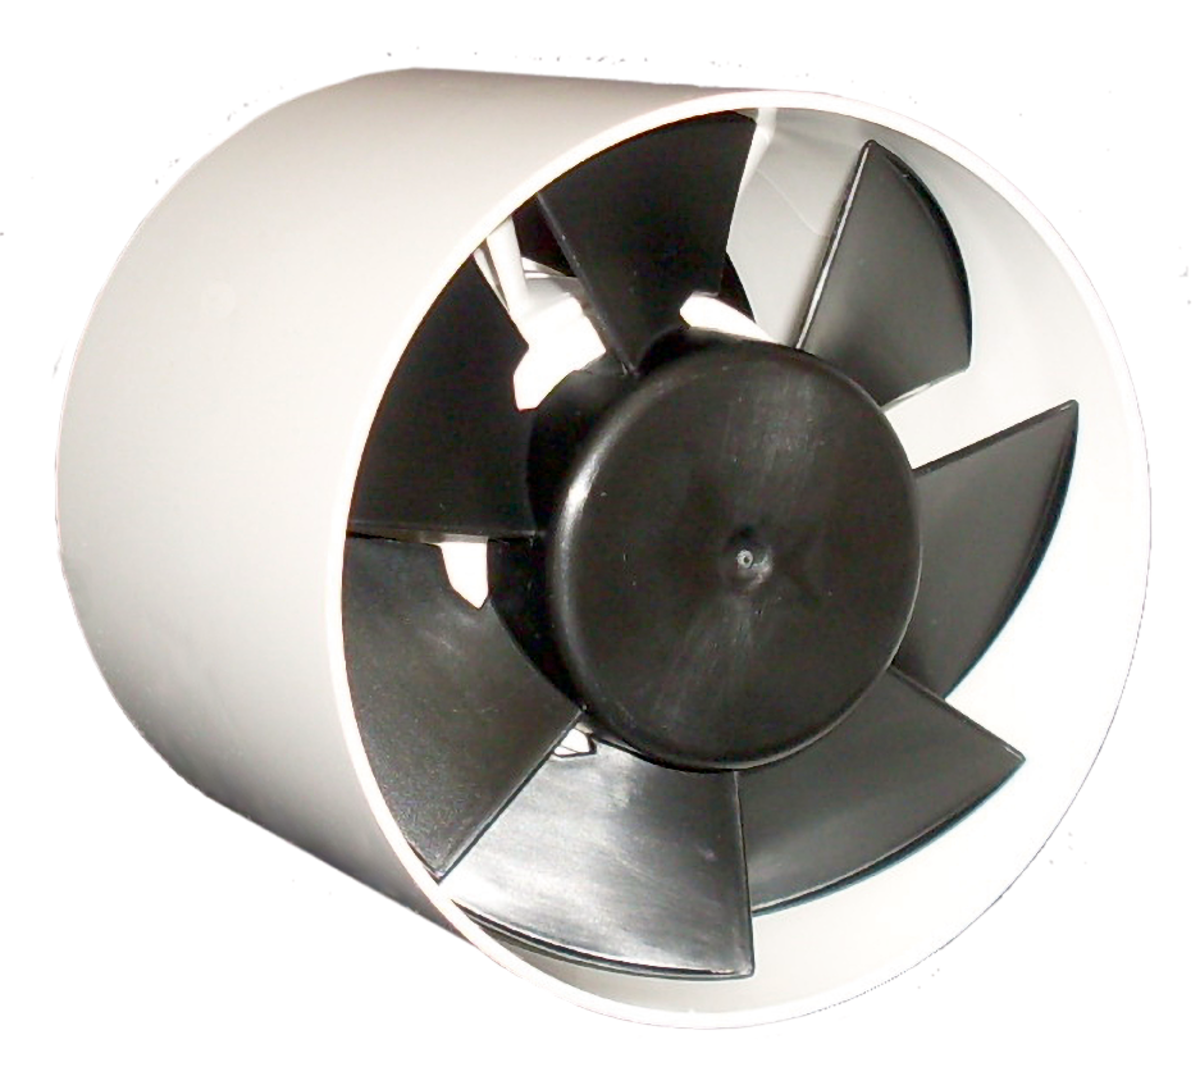 IF - Ventilateurs domestiques - Ventilateurs (Ventilation et Traitement d’air) - Produits Ventilation & Traitement d’air - Systemair